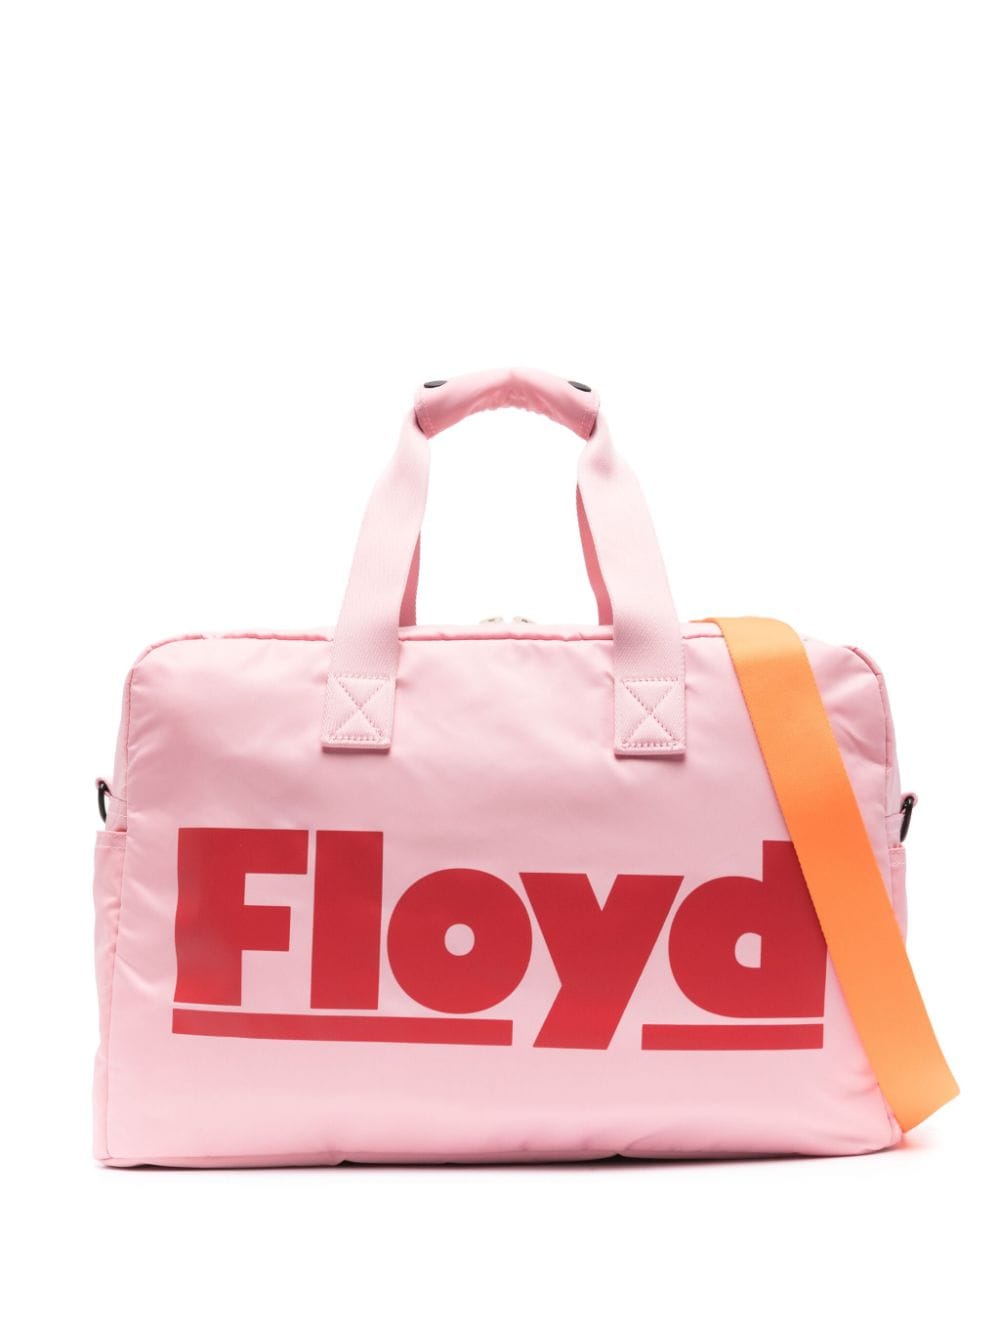 Floyd Weekender Zip-up Holdall In Pink